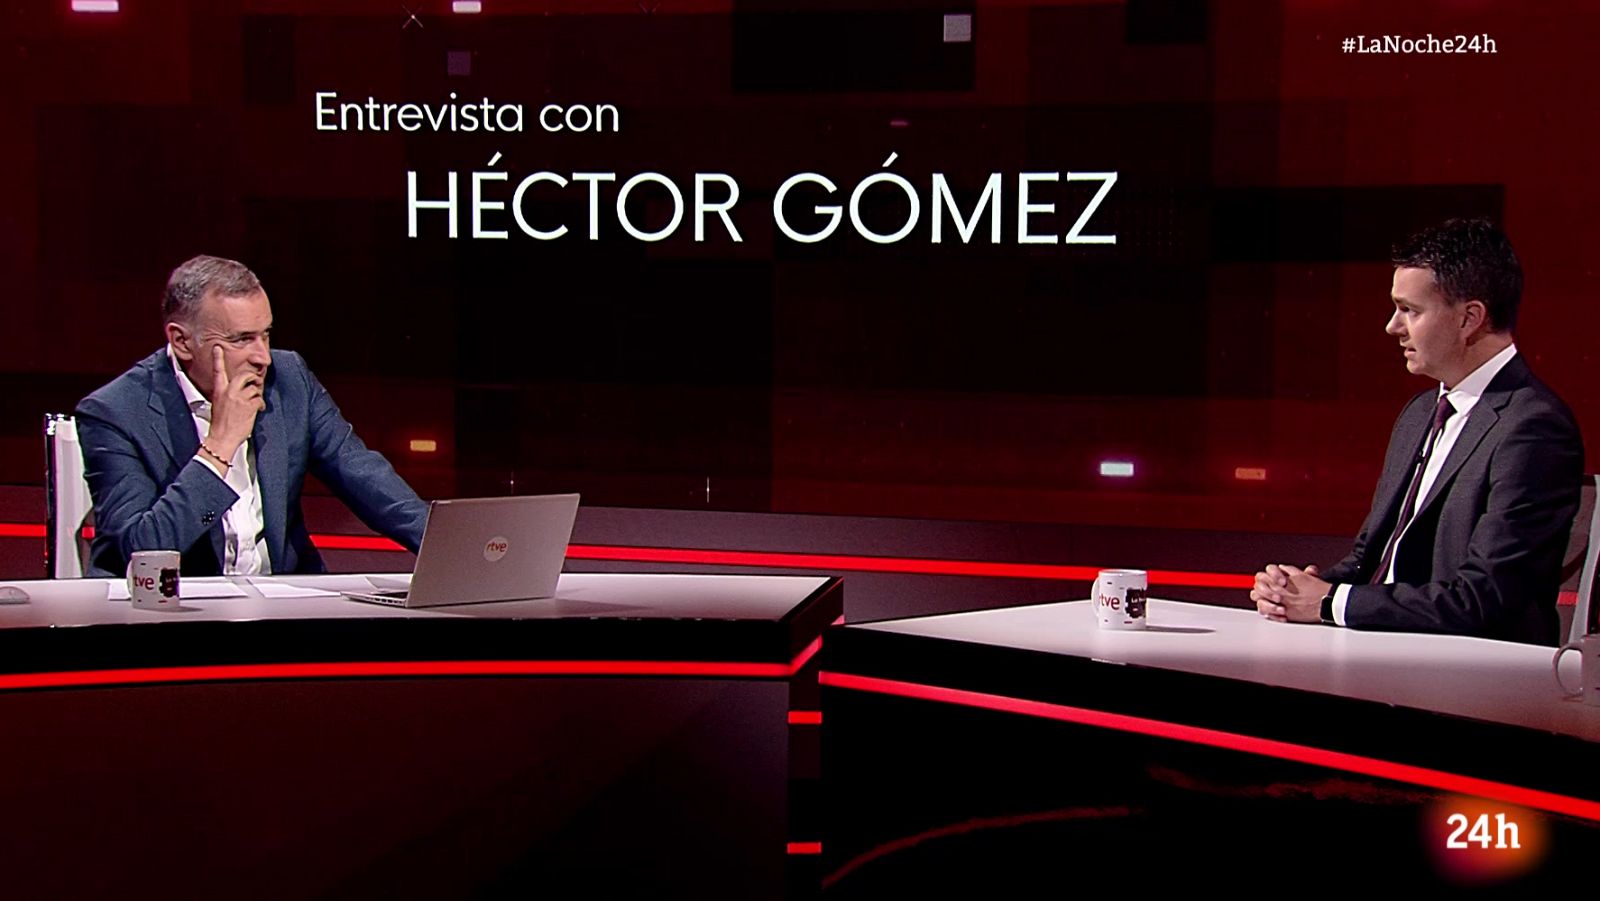 Héctor Gómez: "La sociedad demanda soluciones y menos crispación"